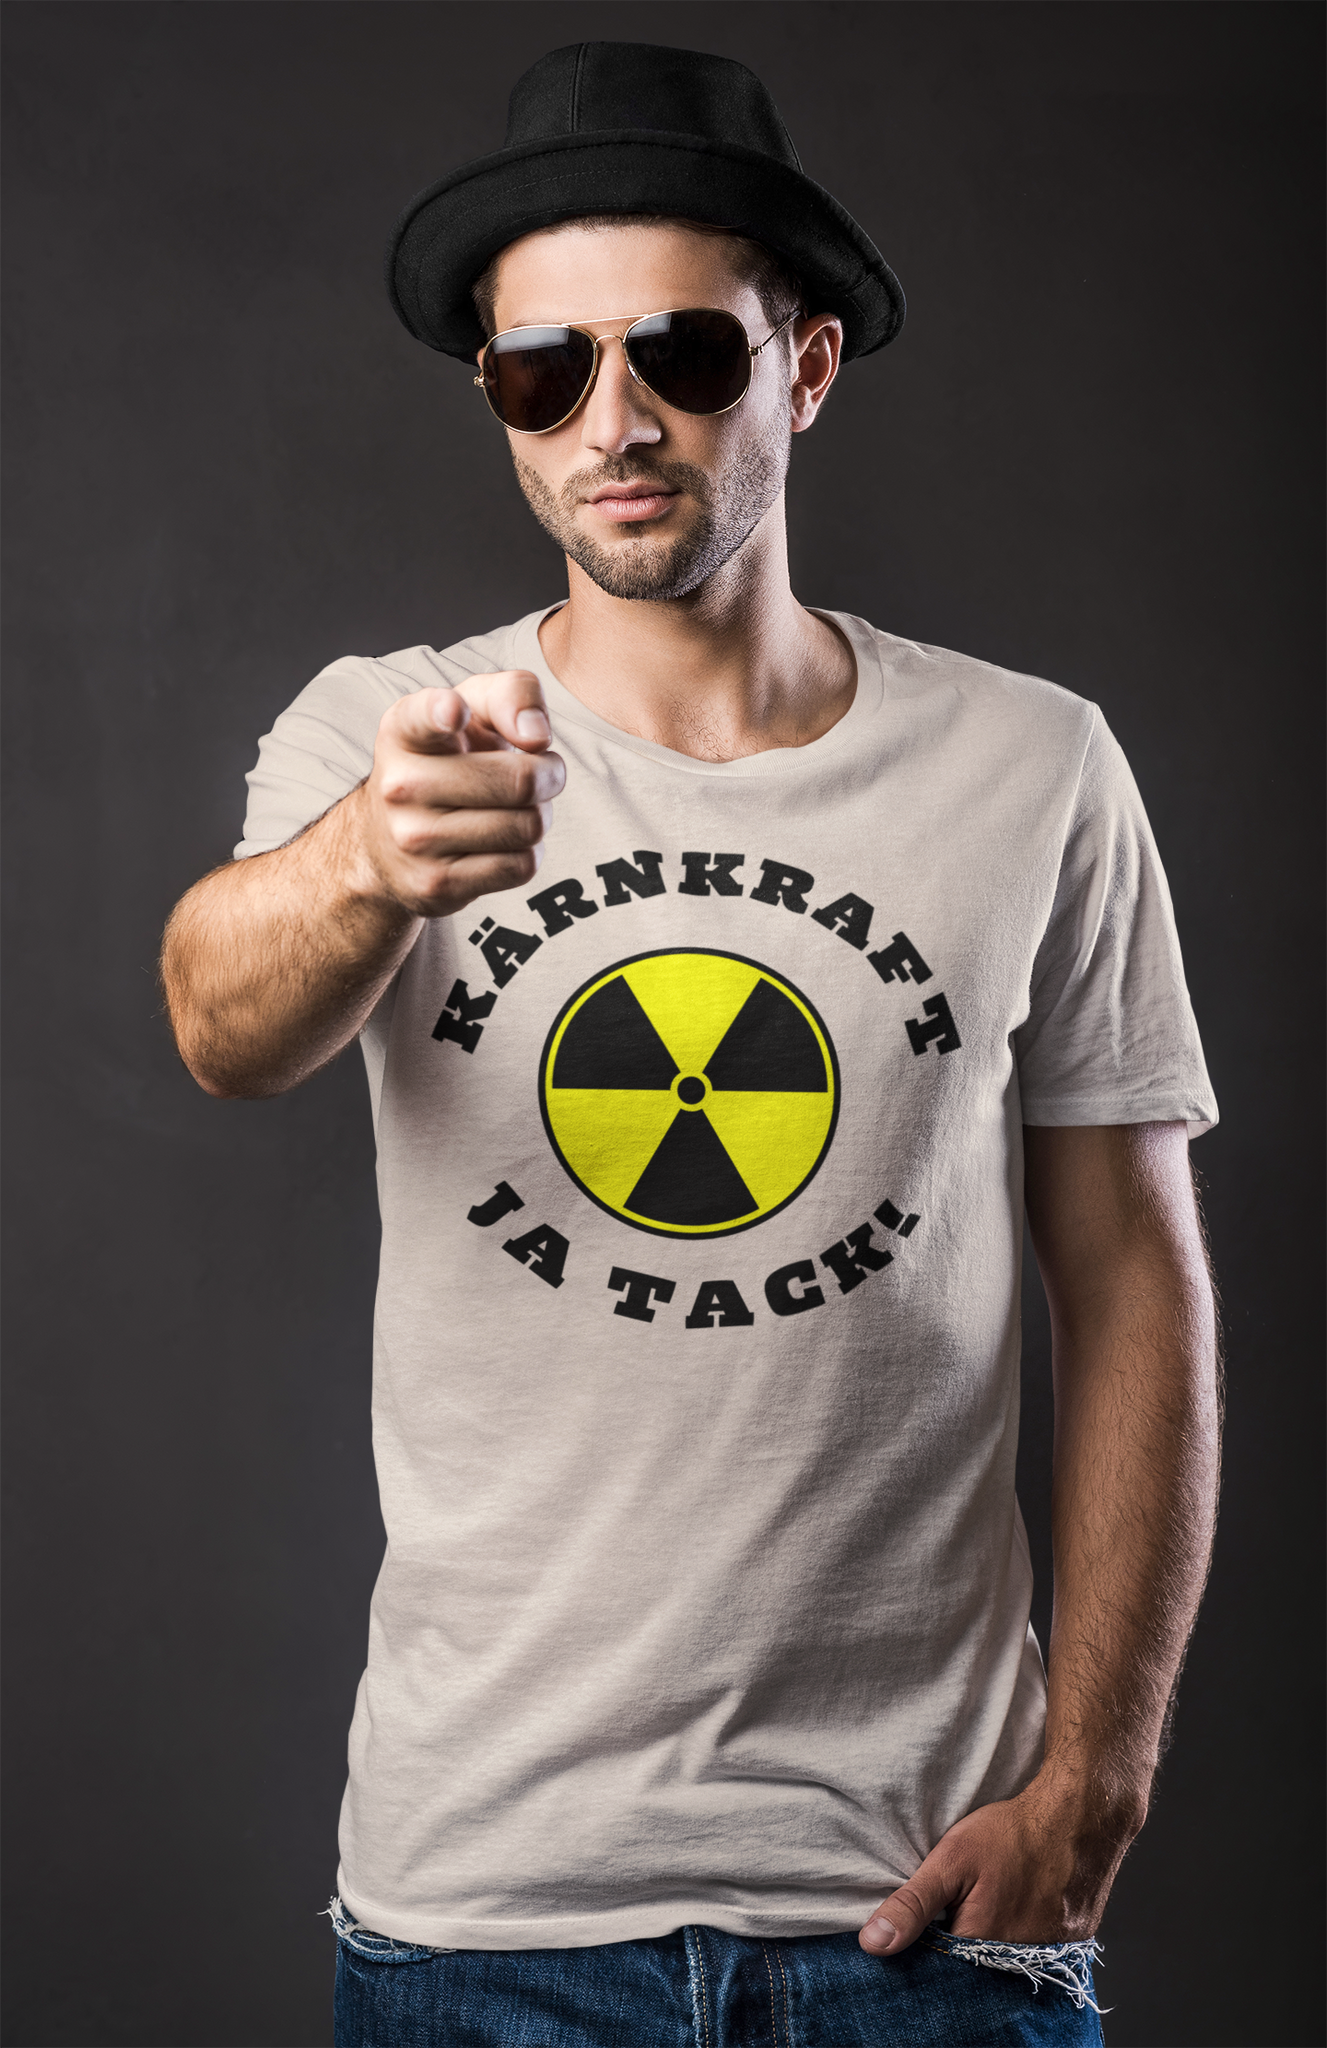 Kärnkraft - Ja Tack! T-Shirt Men